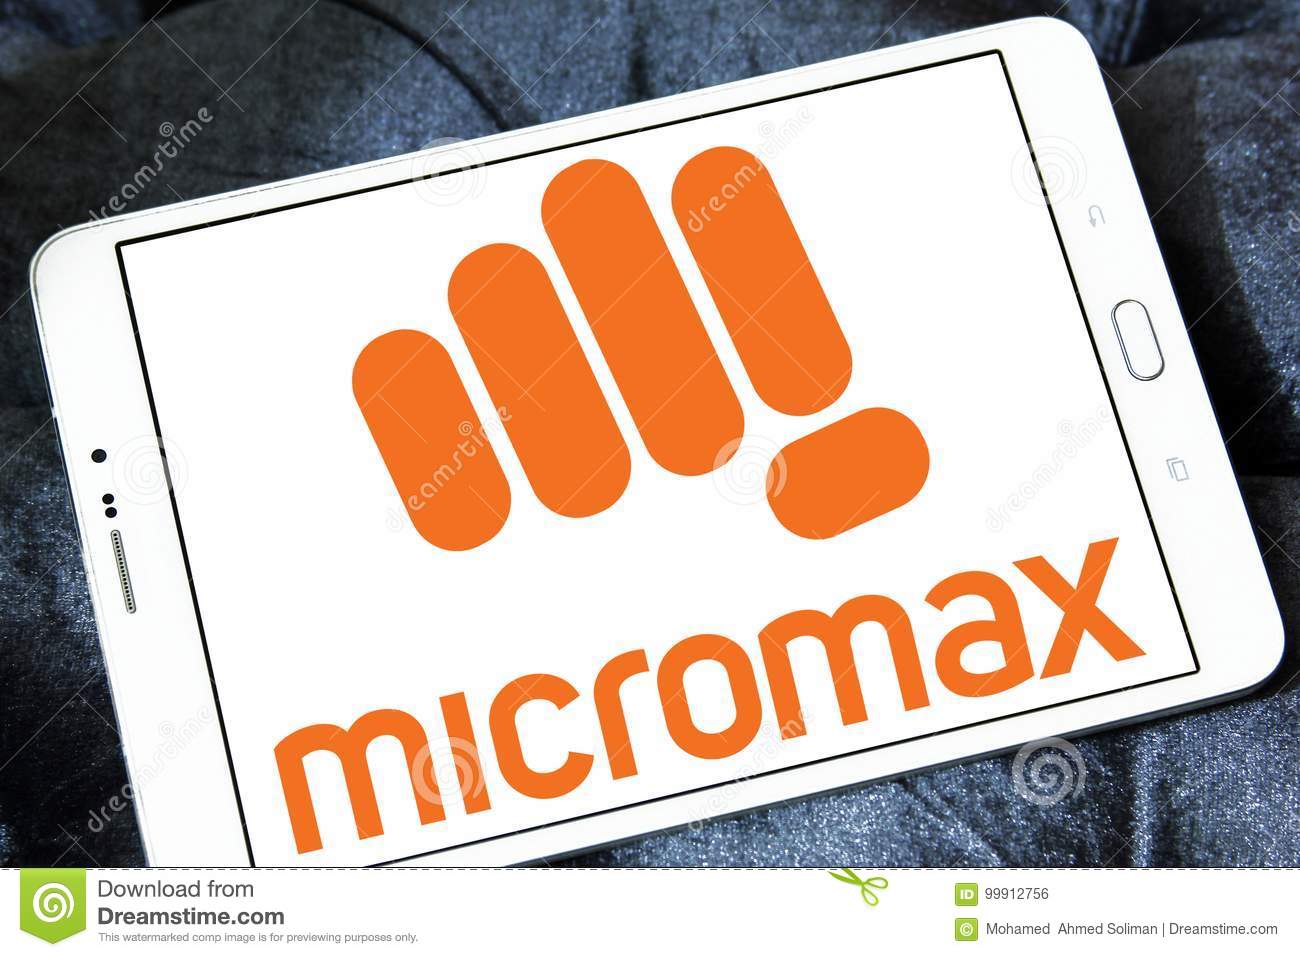 Micromax depleting brands in india